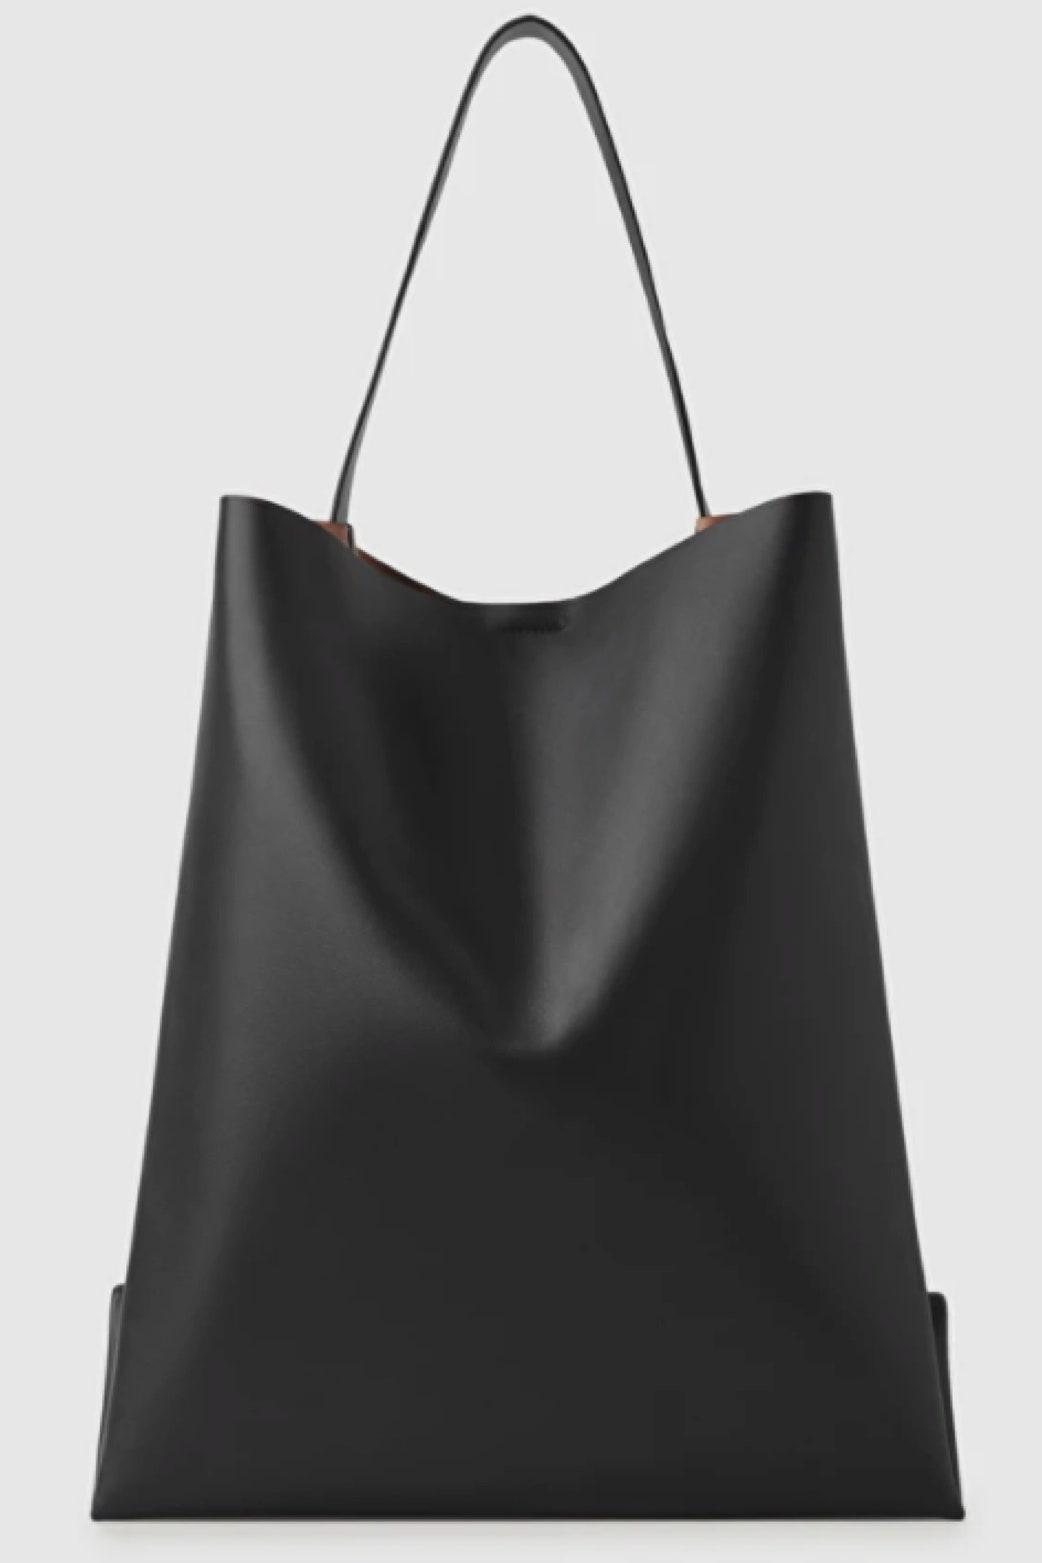 Perfekte schwarze Tasche: Modeprofis lieben diese Bag, denn sie ist chic, zeitlos und sieht aus wie vom Designer – kostet aber bei Weitem nicht so viel